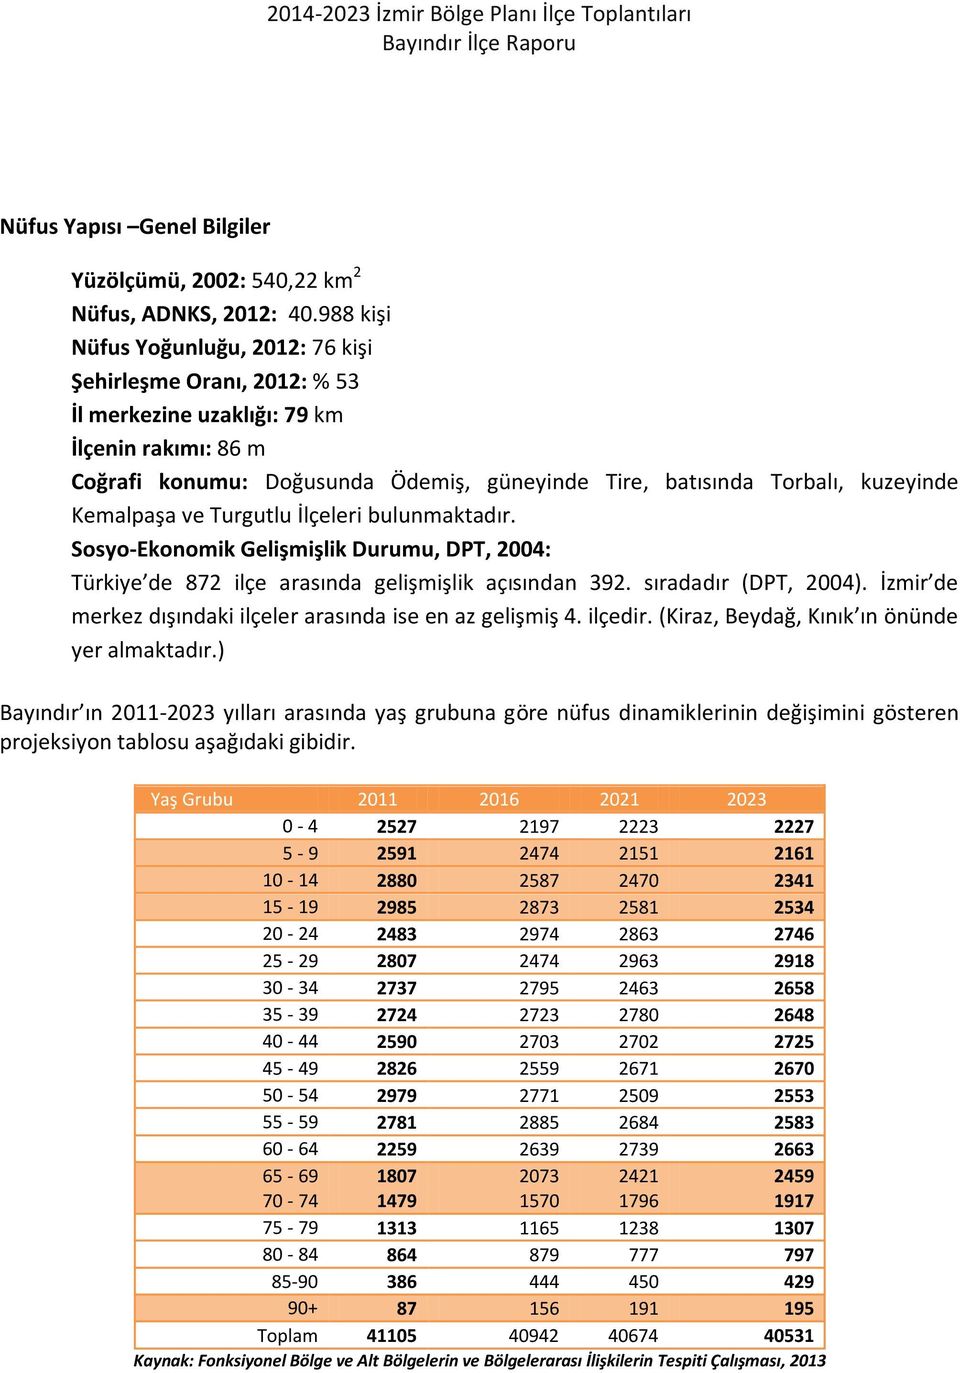 Kemalpaşa ve Turgutlu İlçeleri bulunmaktadır. Sosyo-Ekonomik Gelişmişlik Durumu, DPT, 2004: Türkiye de 872 ilçe arasında gelişmişlik açısından 392. sıradadır (DPT, 2004).